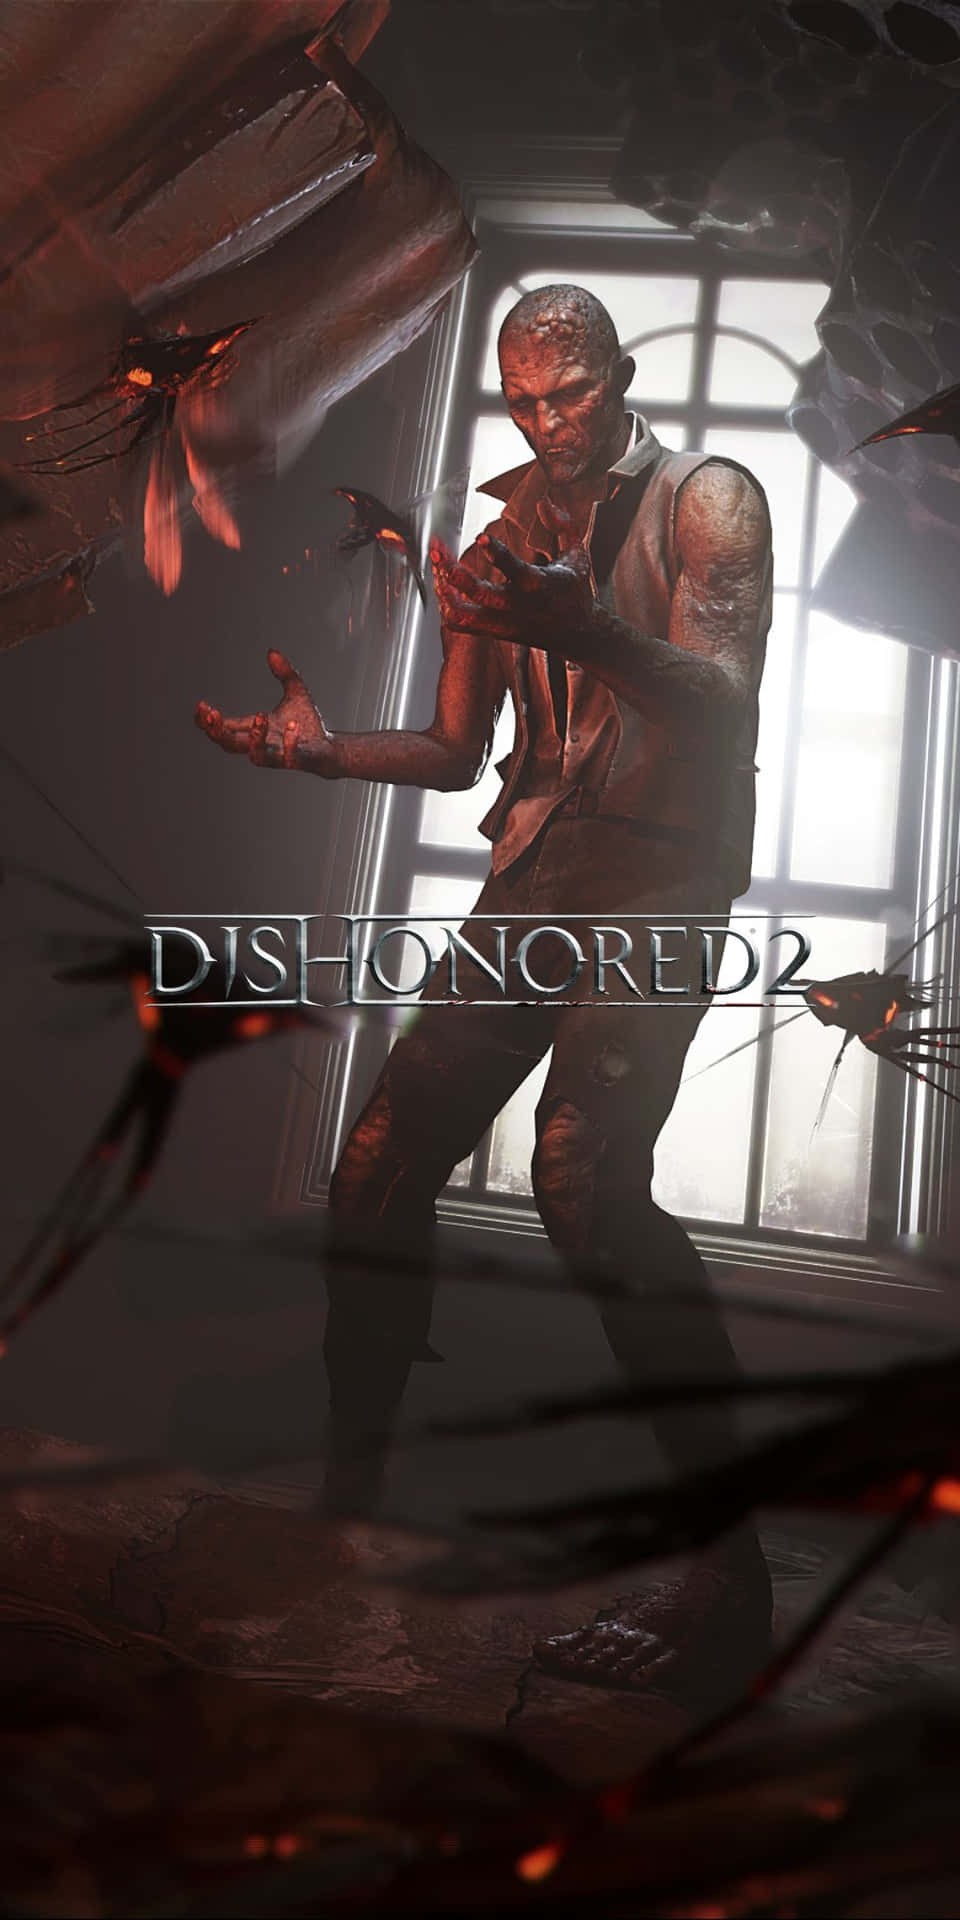 Pixel3 Och Dishonored 2 - En Perfekt Kombination.